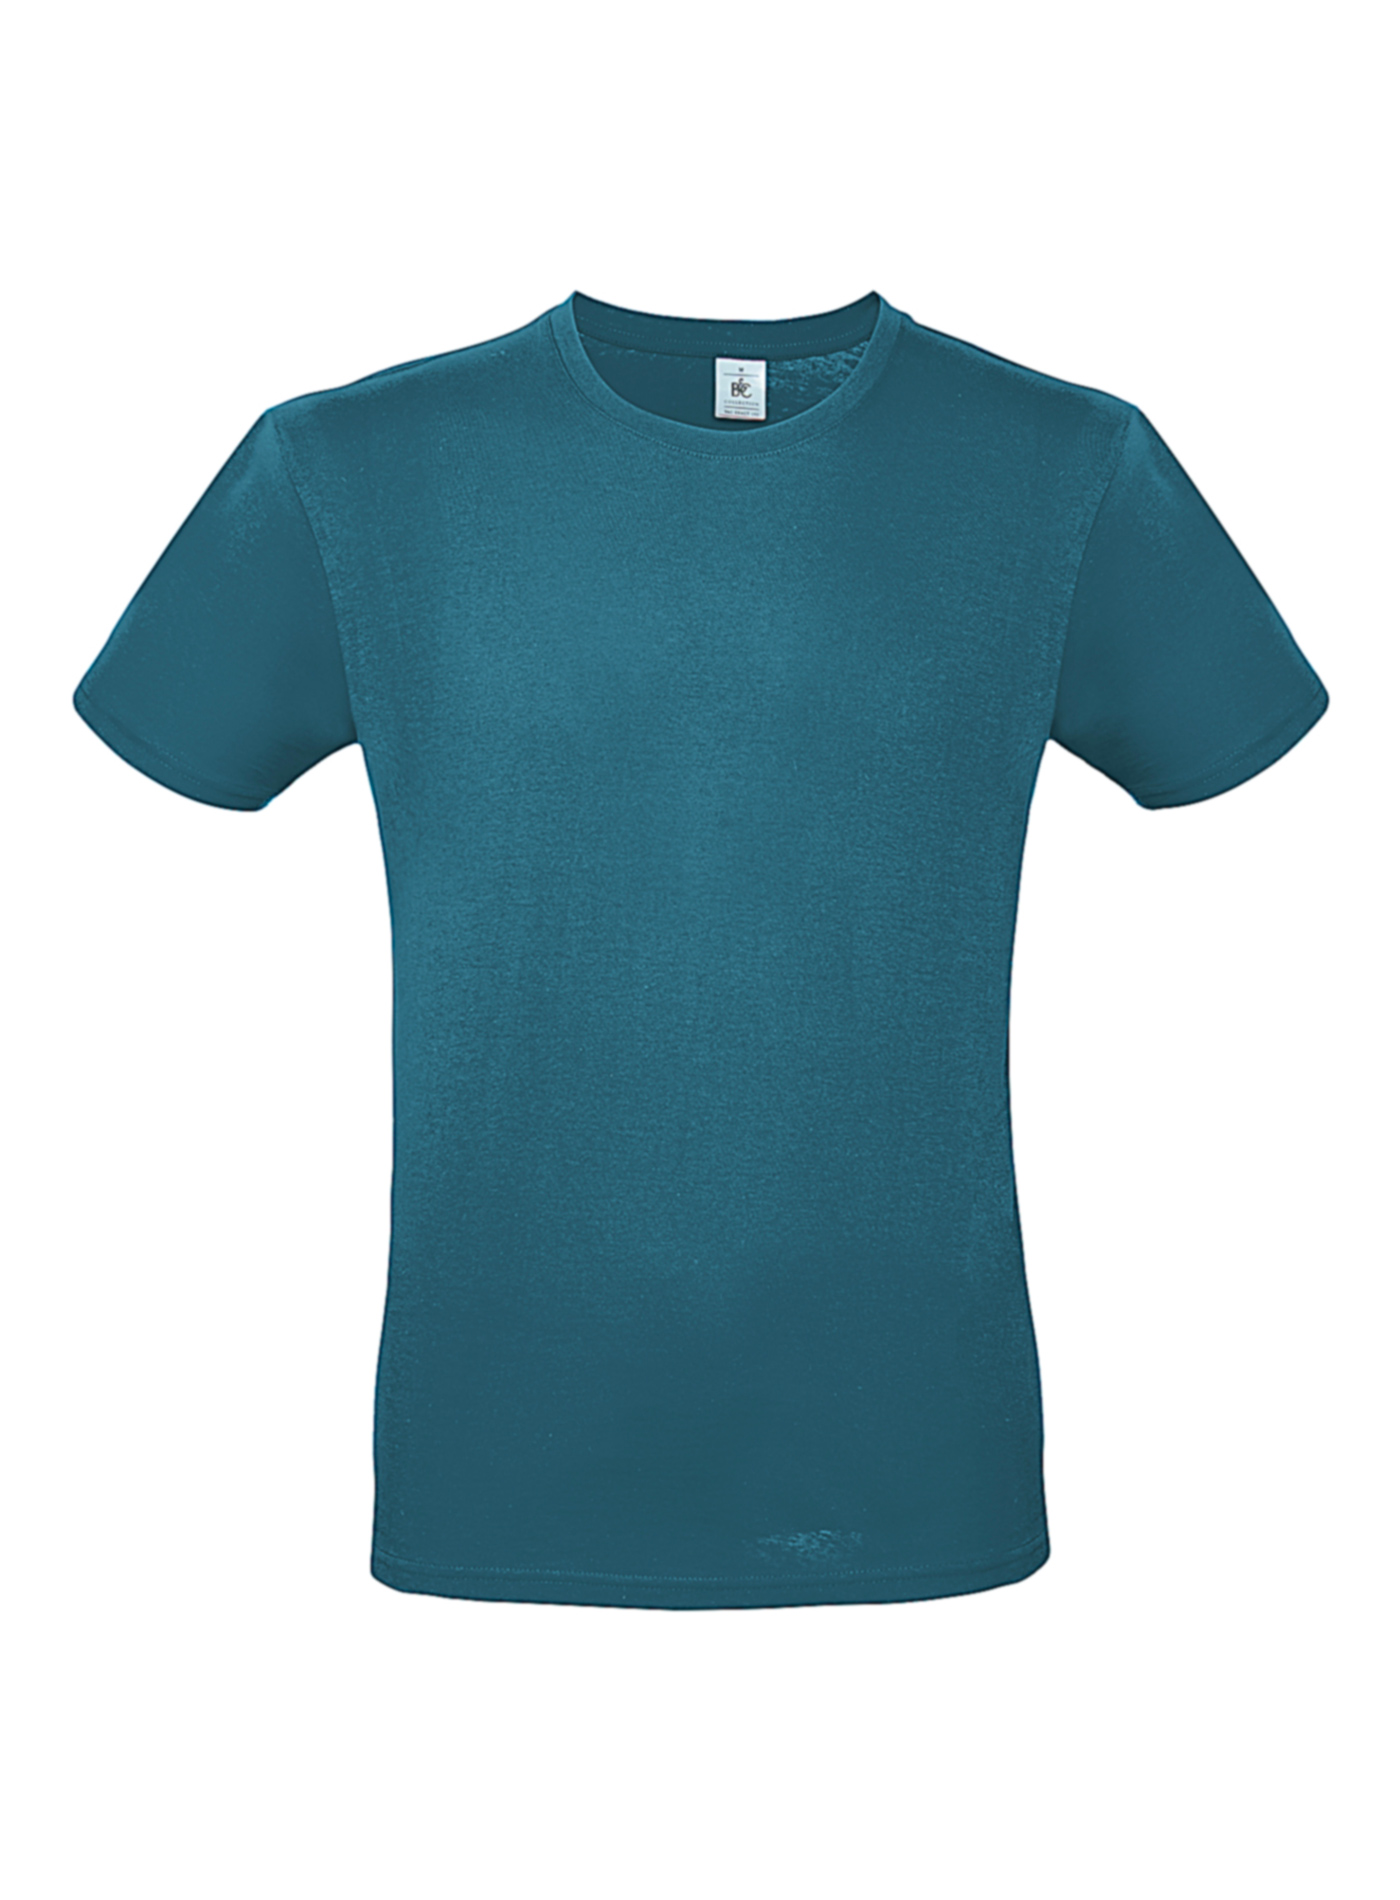 Pánské tričko B&C - Modrozelená M